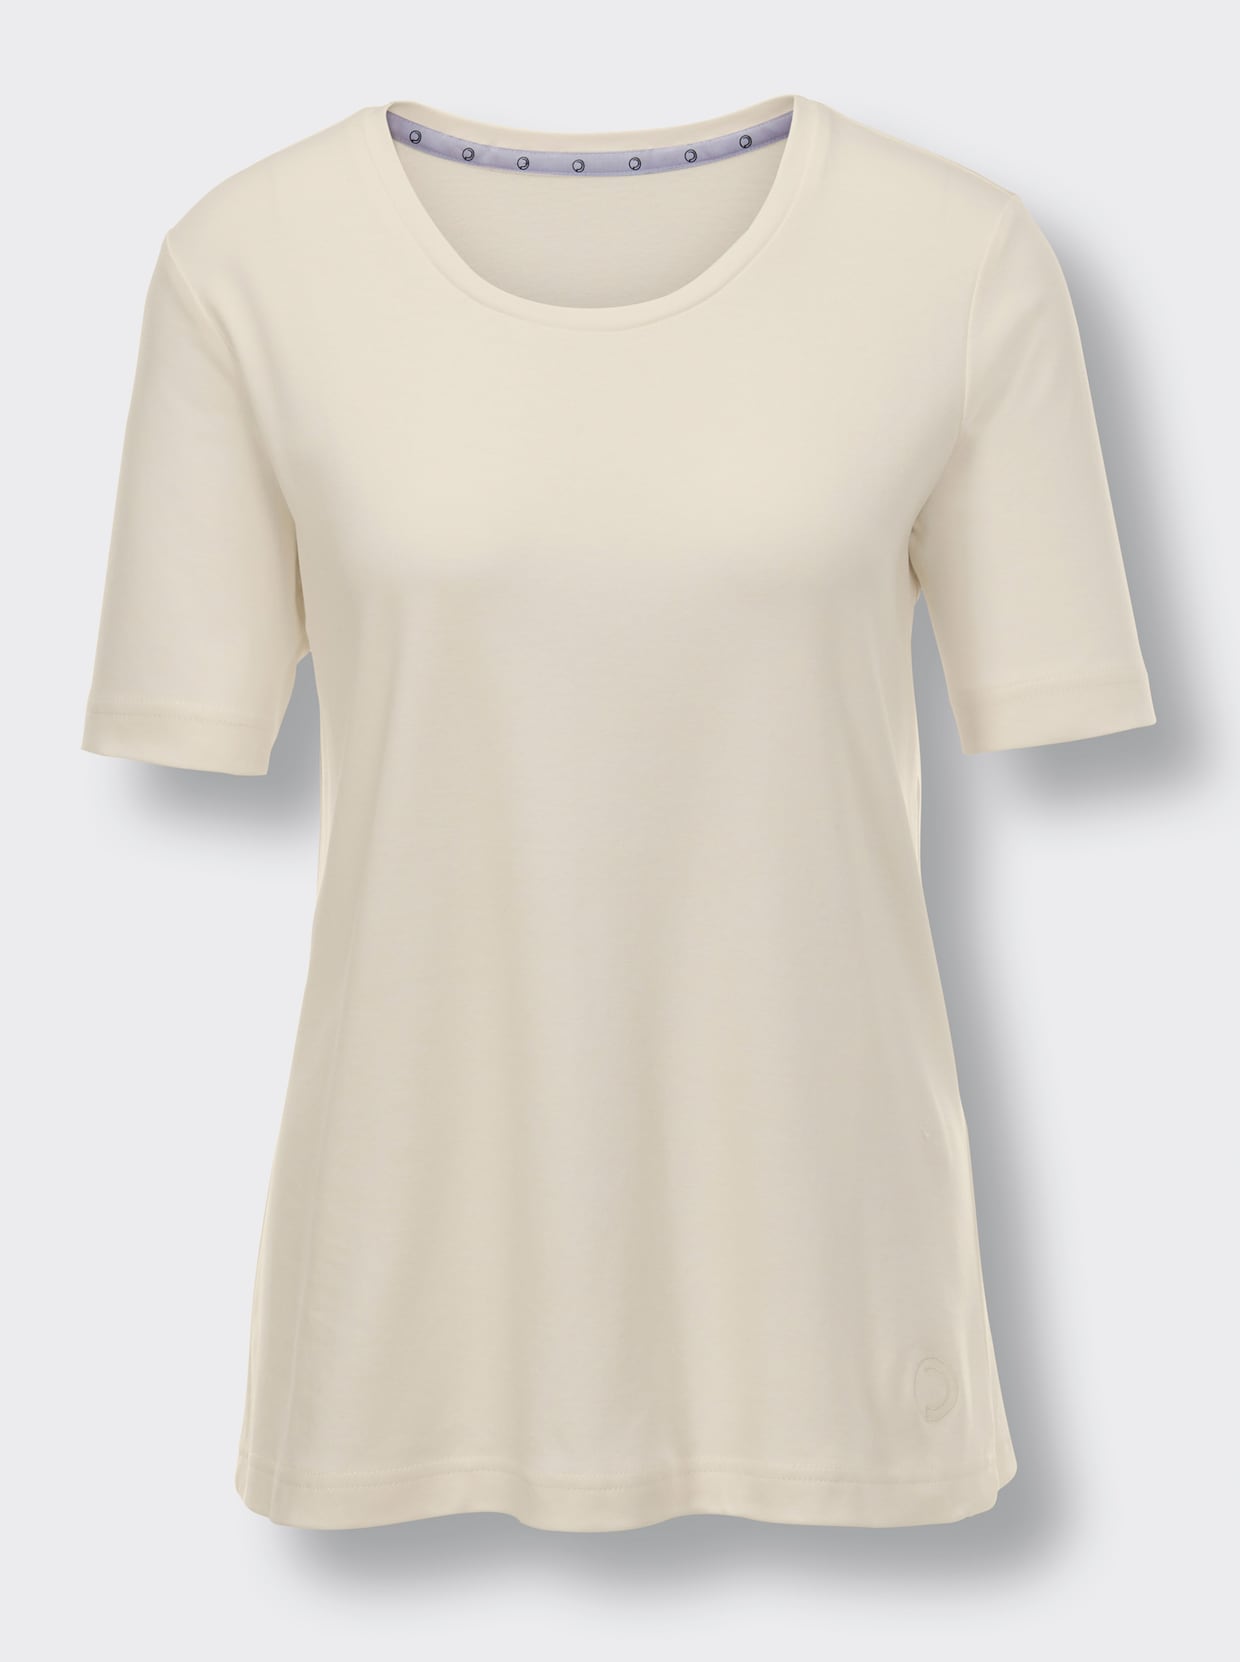 CREATION L PREMIUM T-shirt coton - couleur ivoire